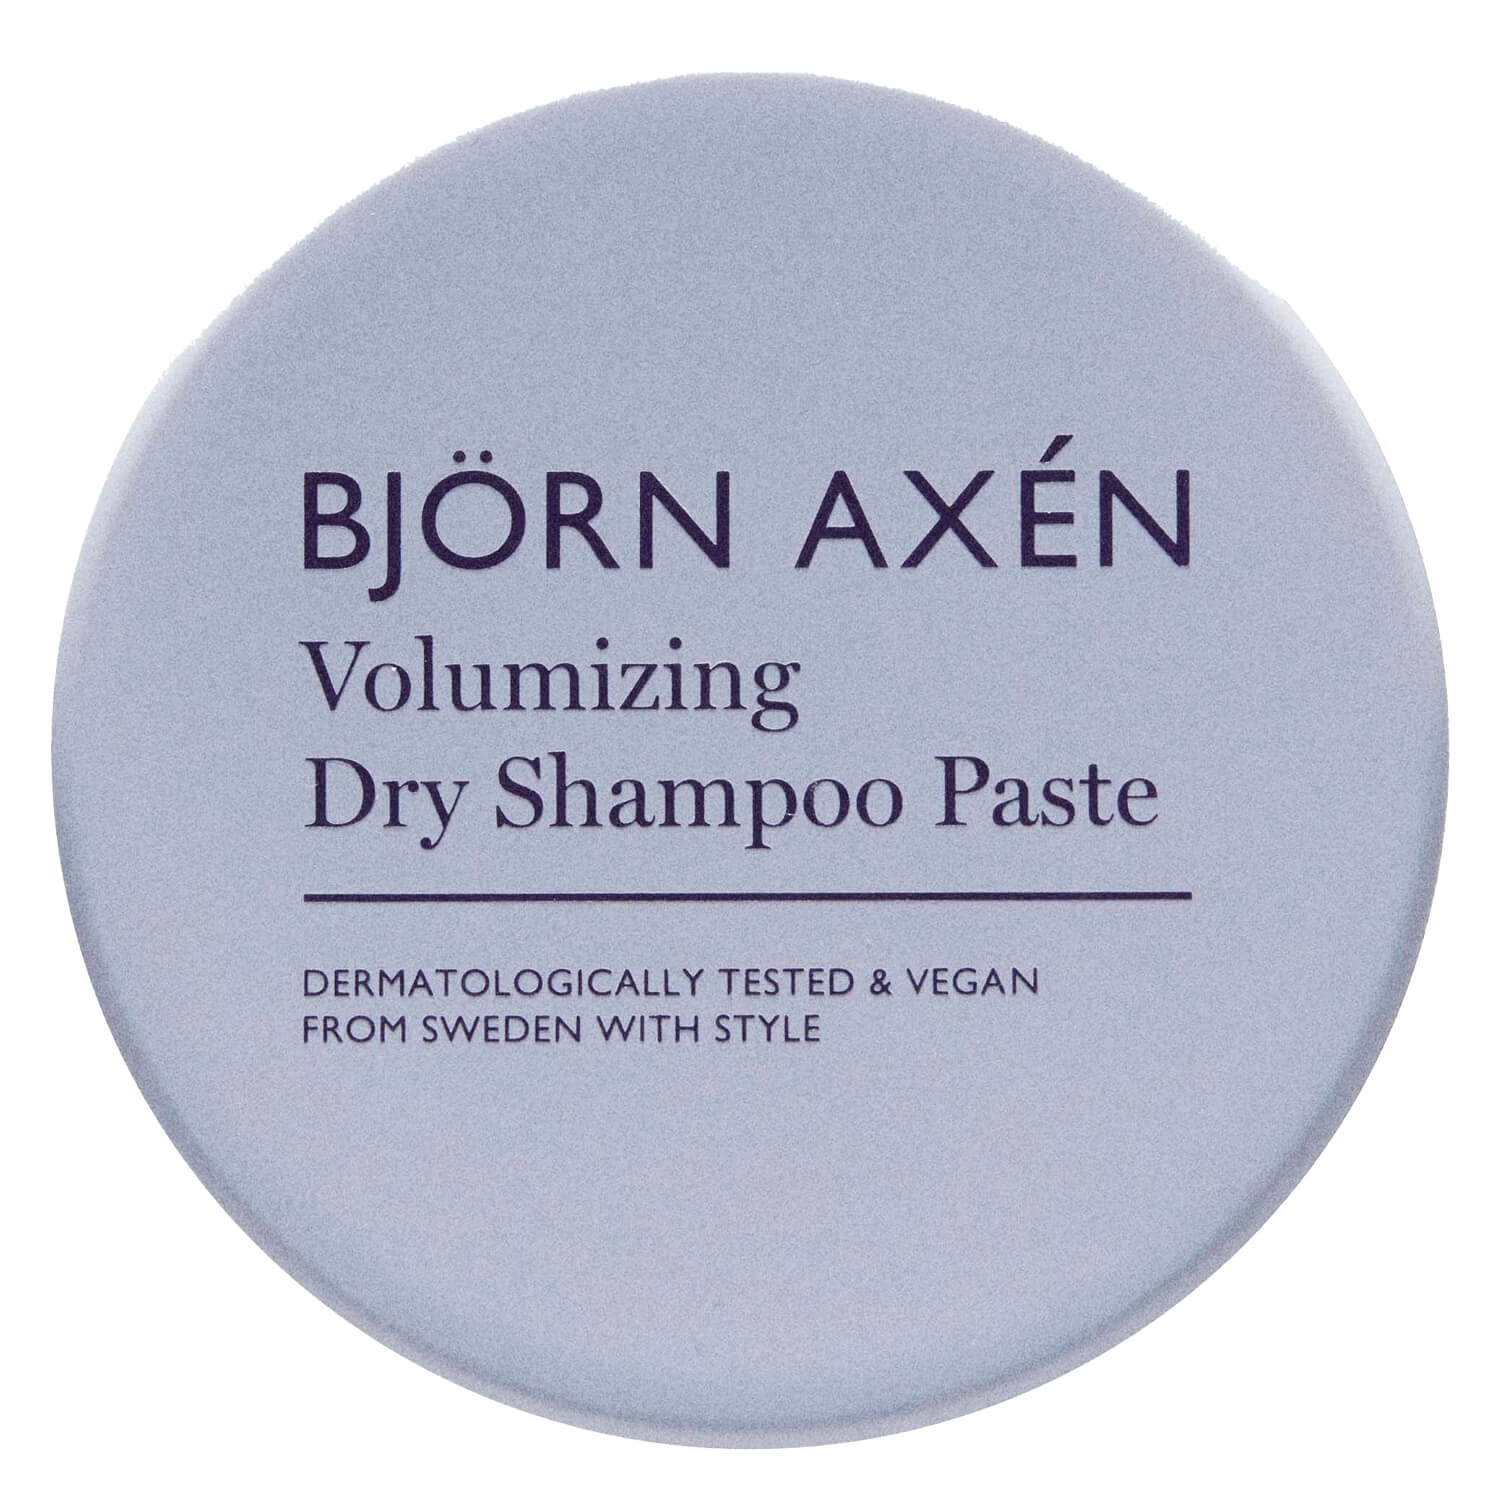 Produktbild von Björn Axén - Volumizing Dry Shampoo Paste